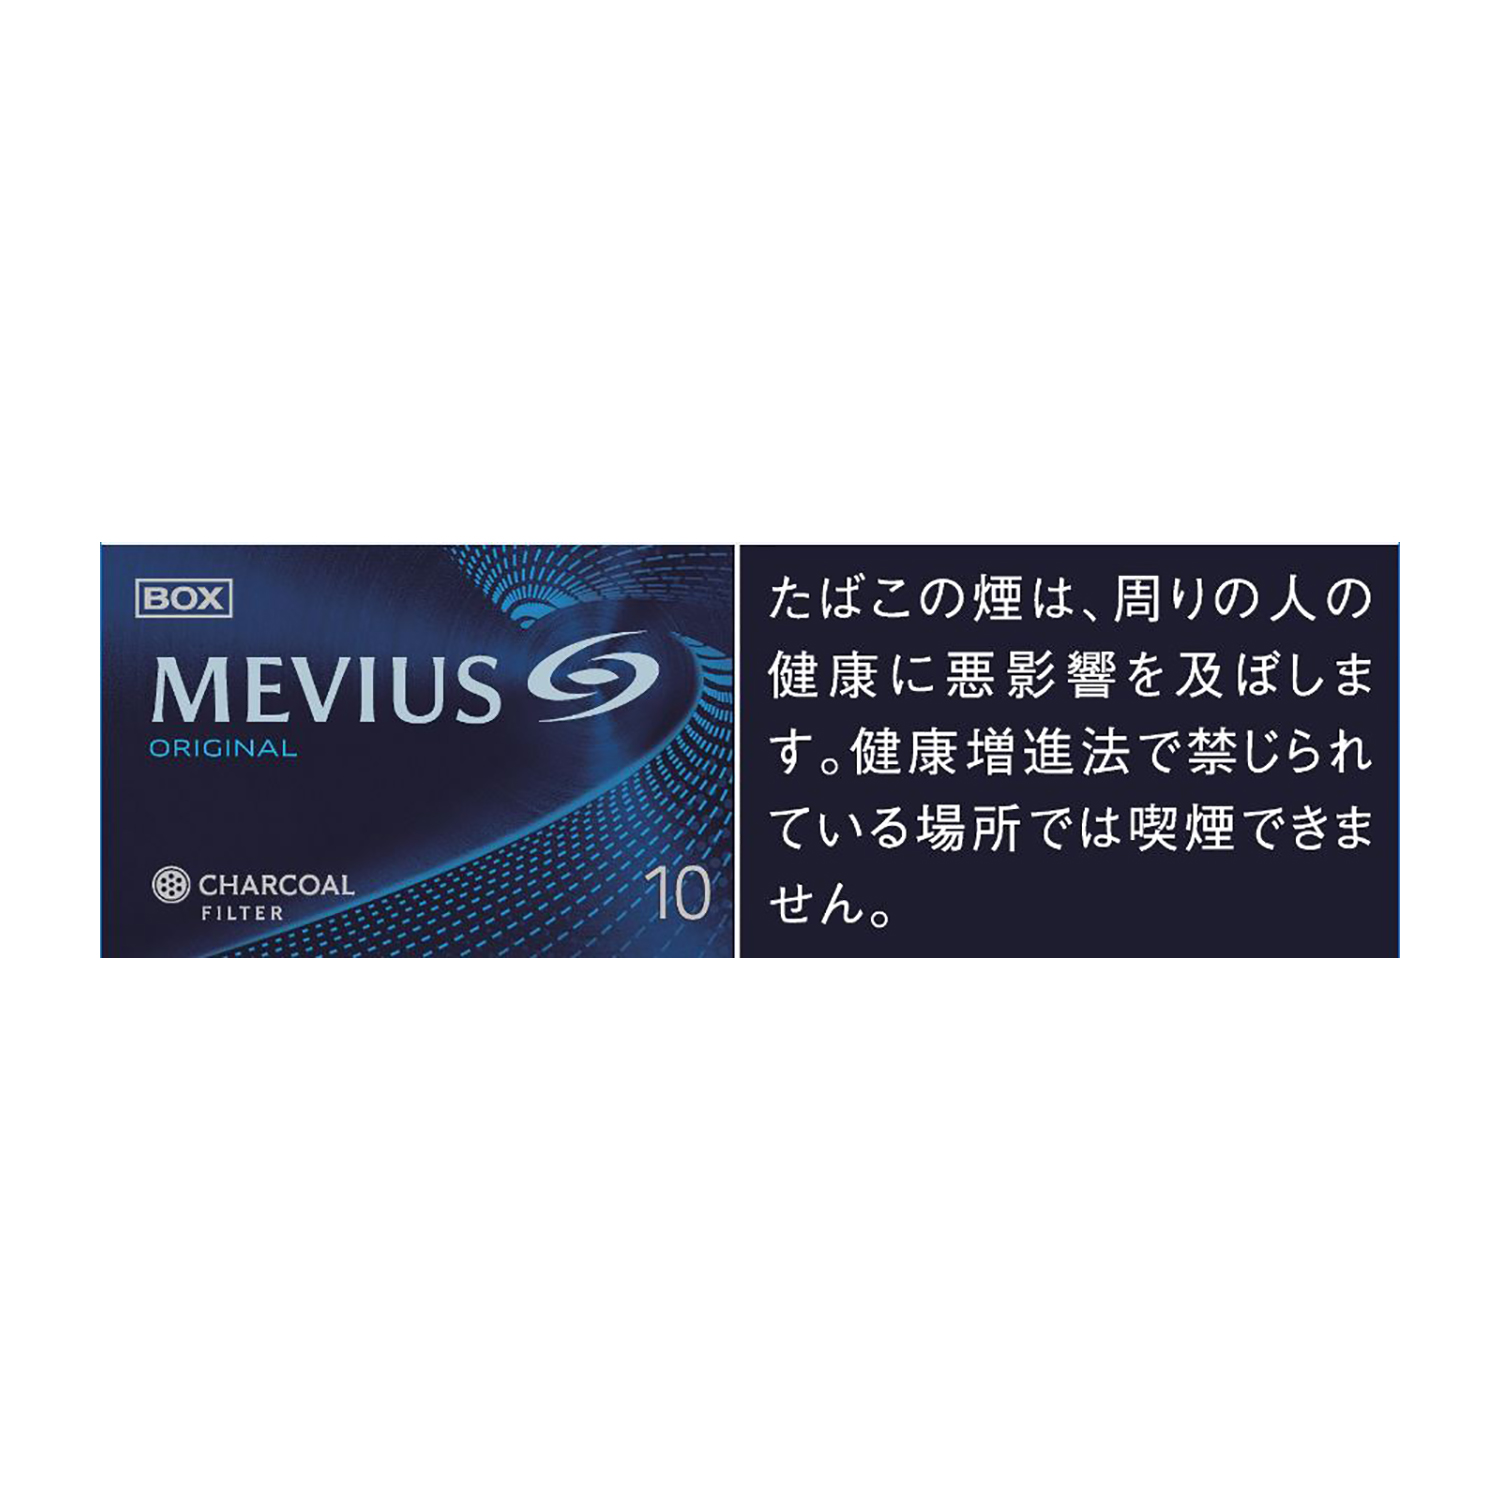 MEVIUS BOX / Tar:10mg Nicotine:0.8mg